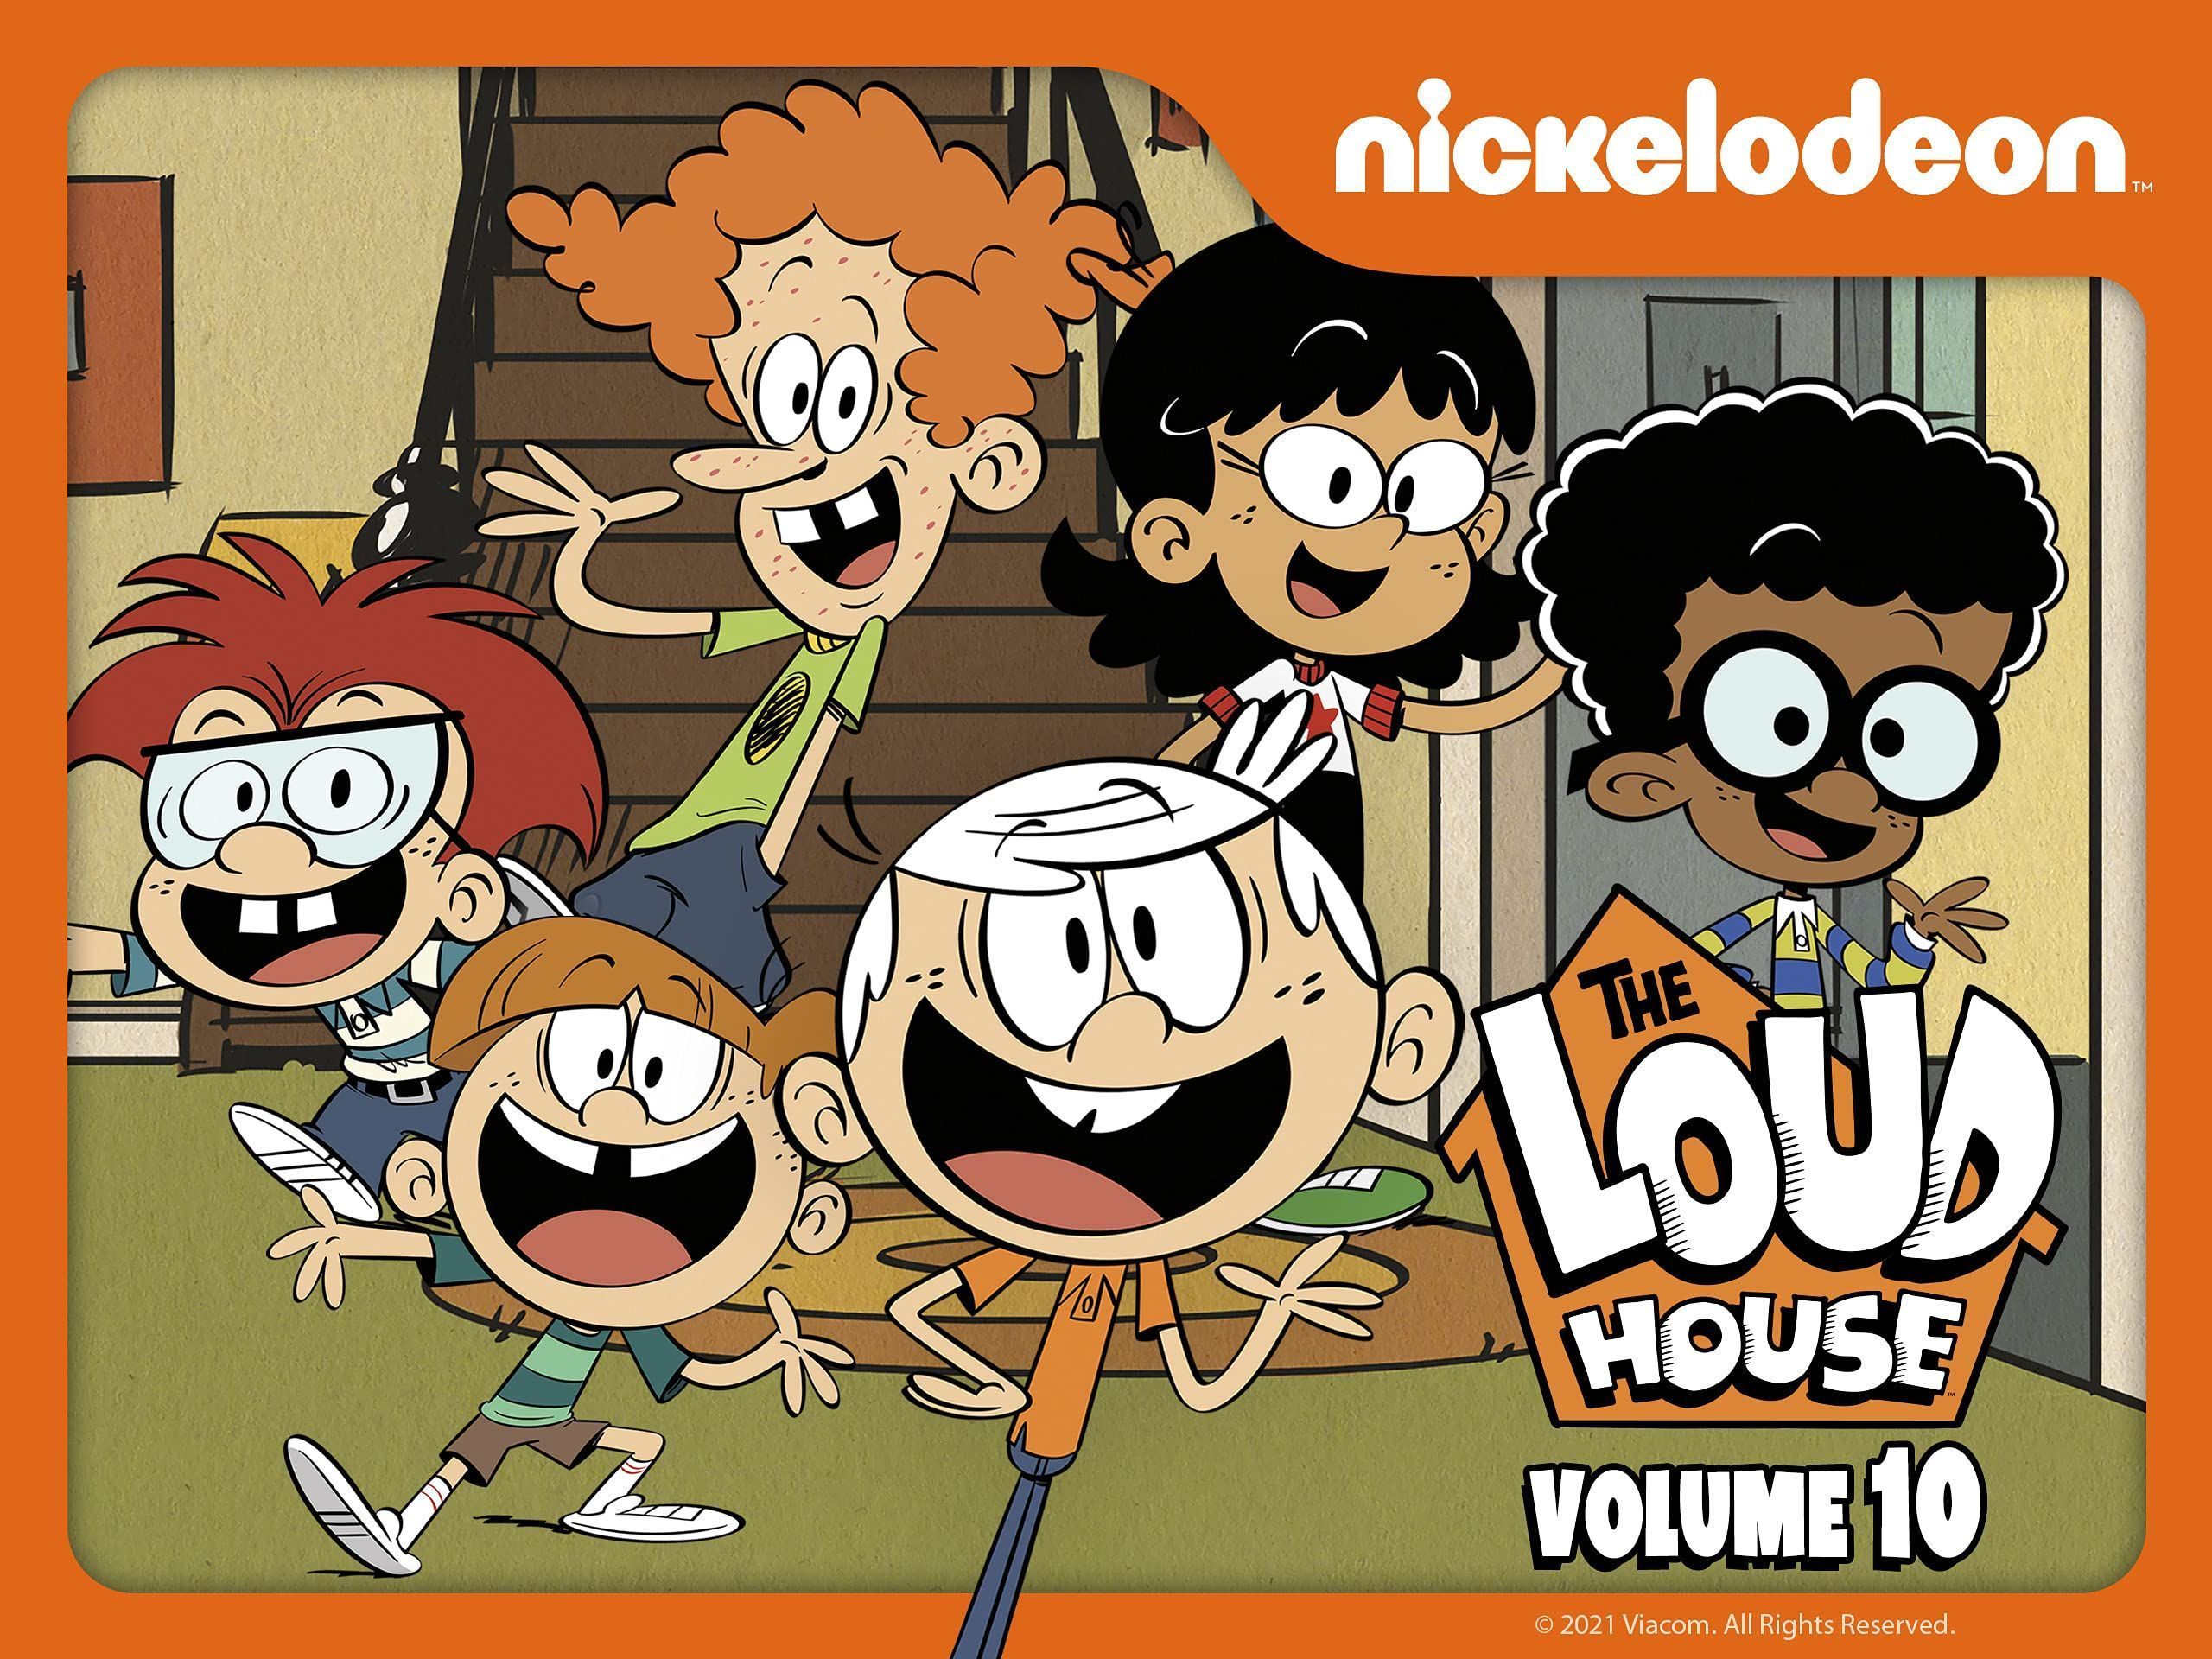 La serie tan conocida y famosa de nickelodeon  da a conocer sus últimos capítulos,the Loud House